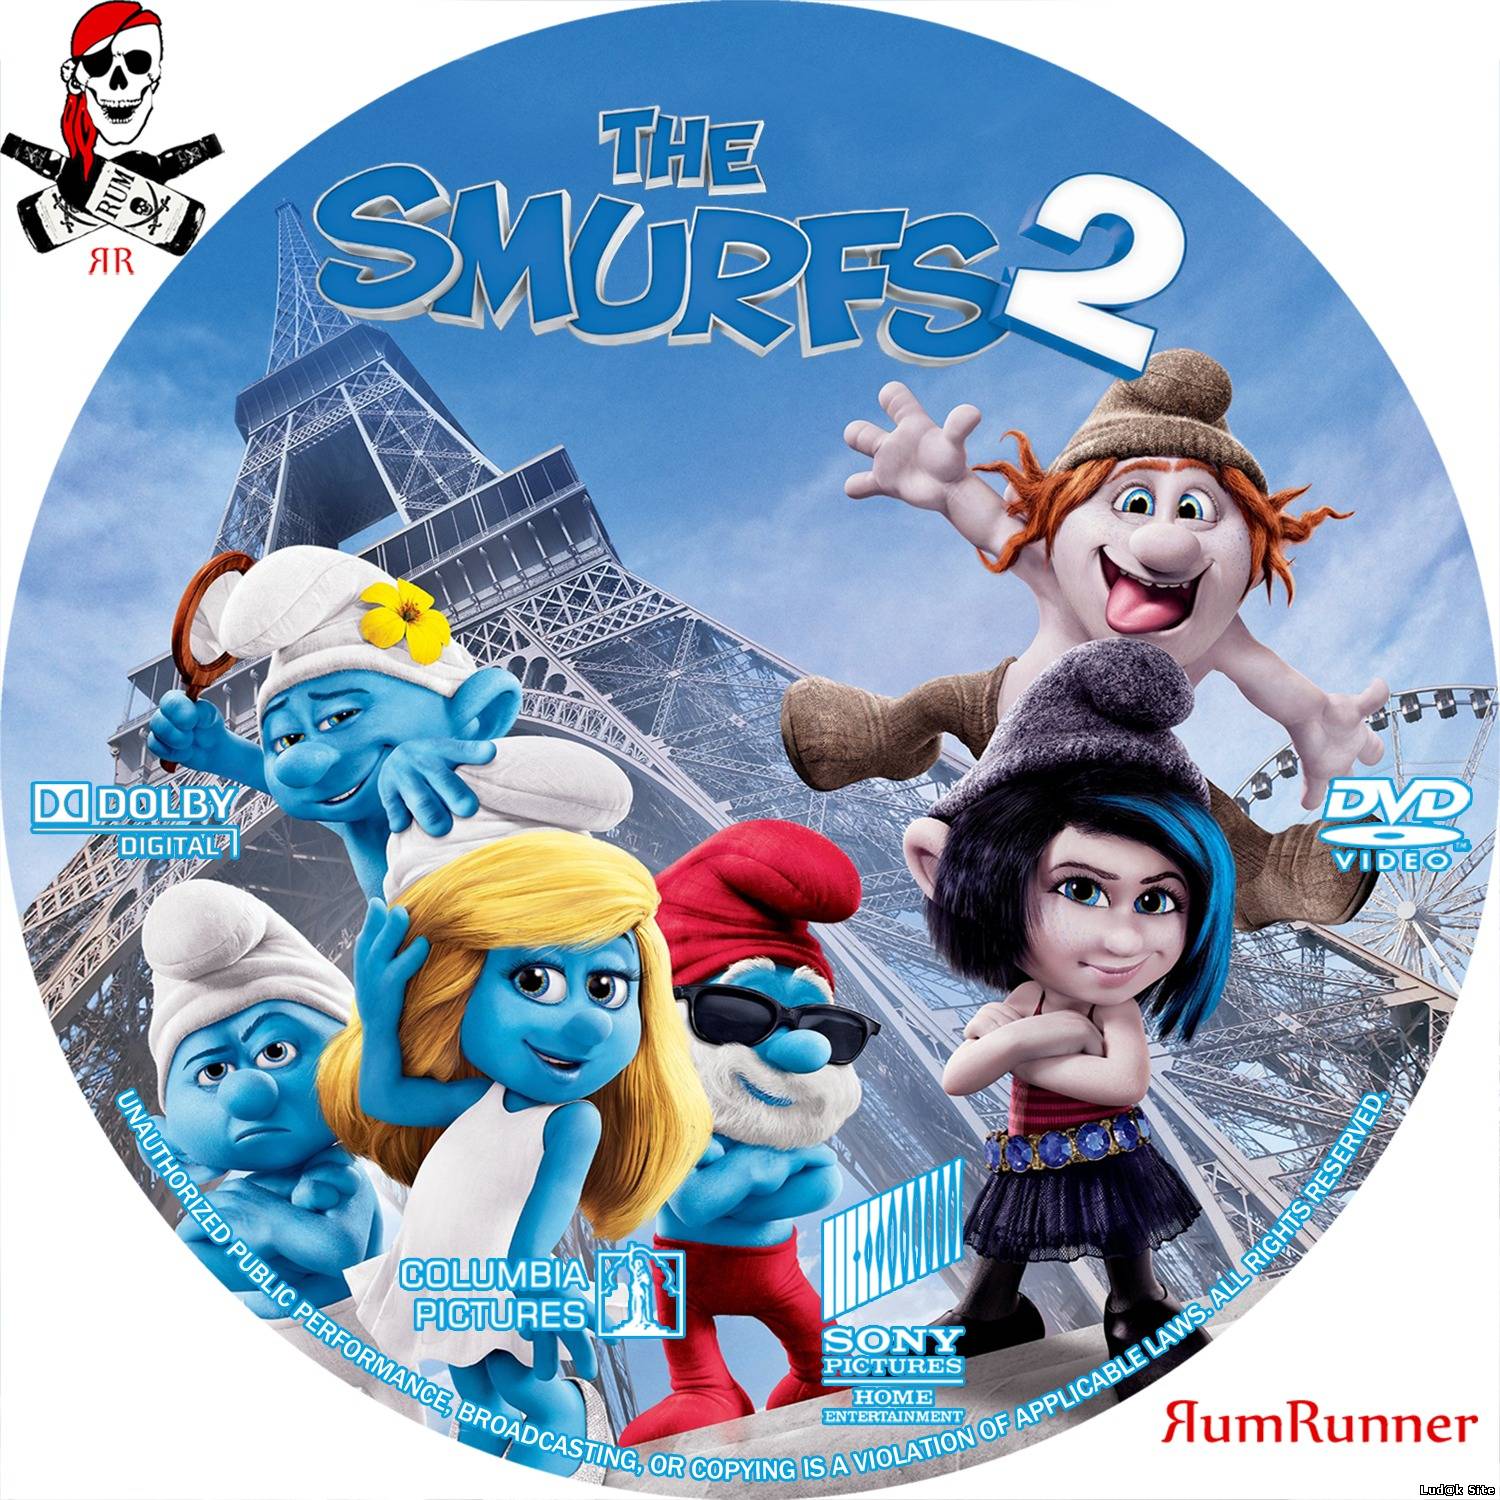 The Smurfs 2 (2013) (Sinhronizovano)